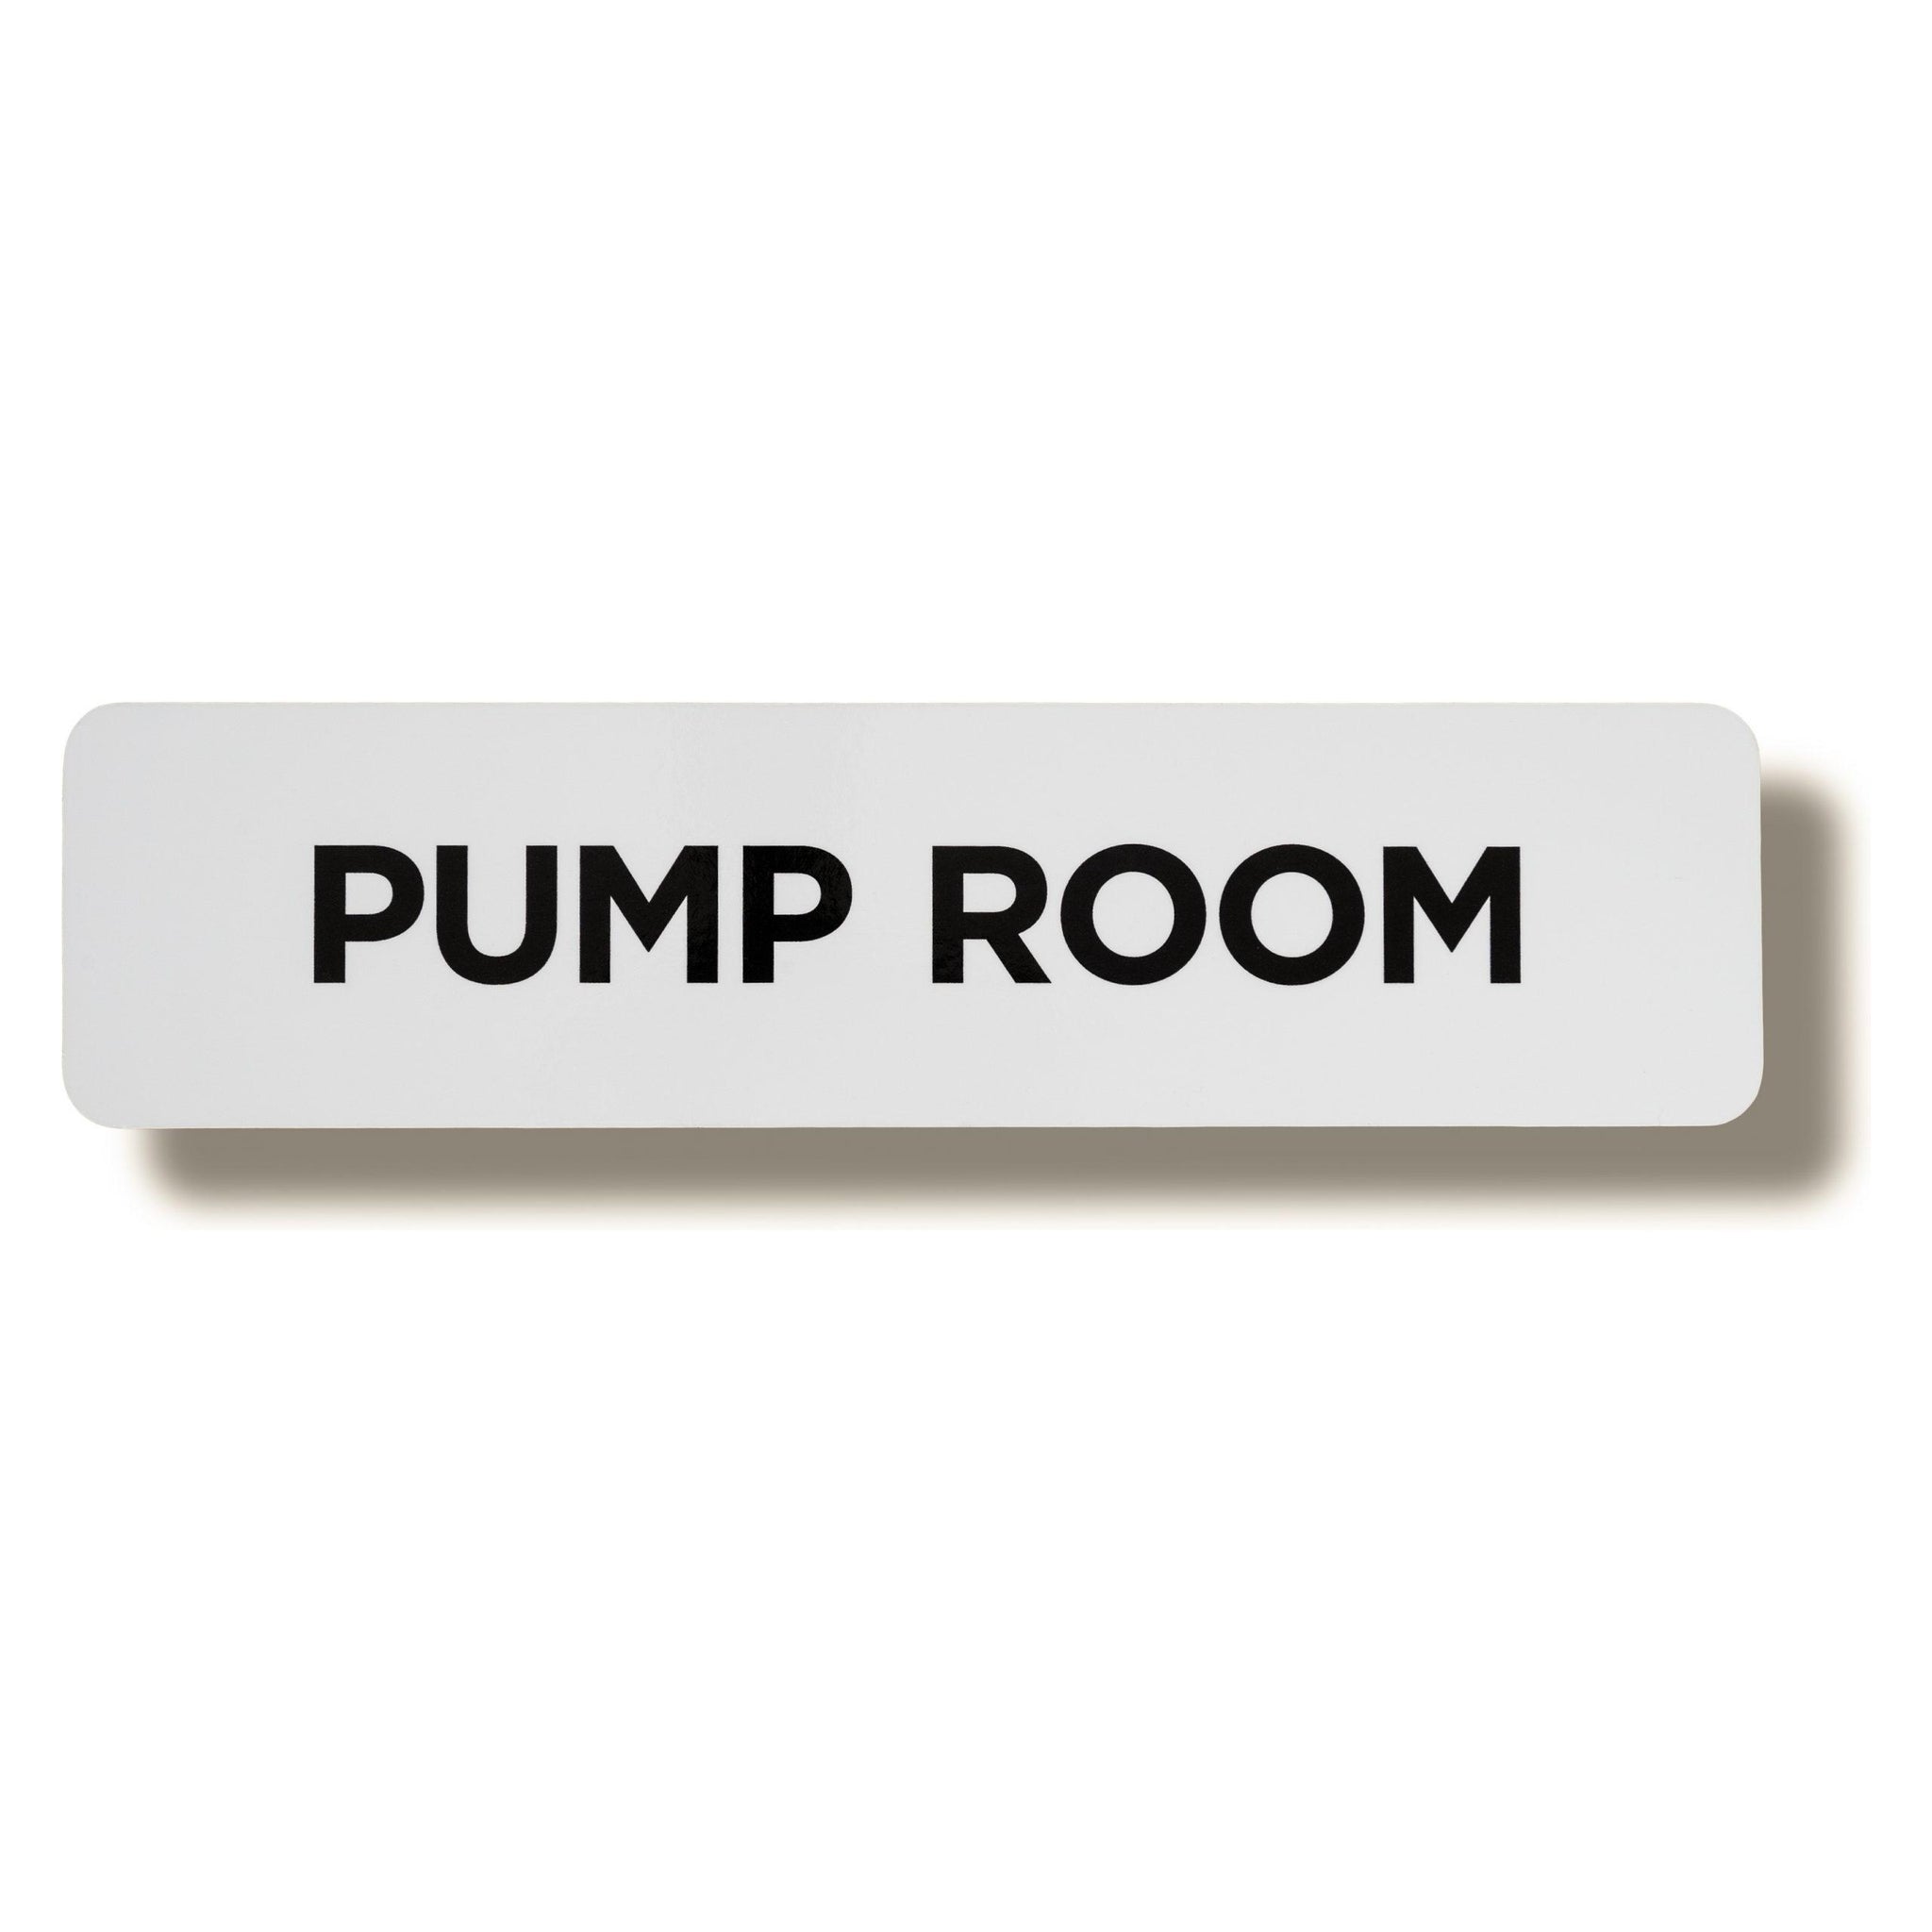 pump room sign